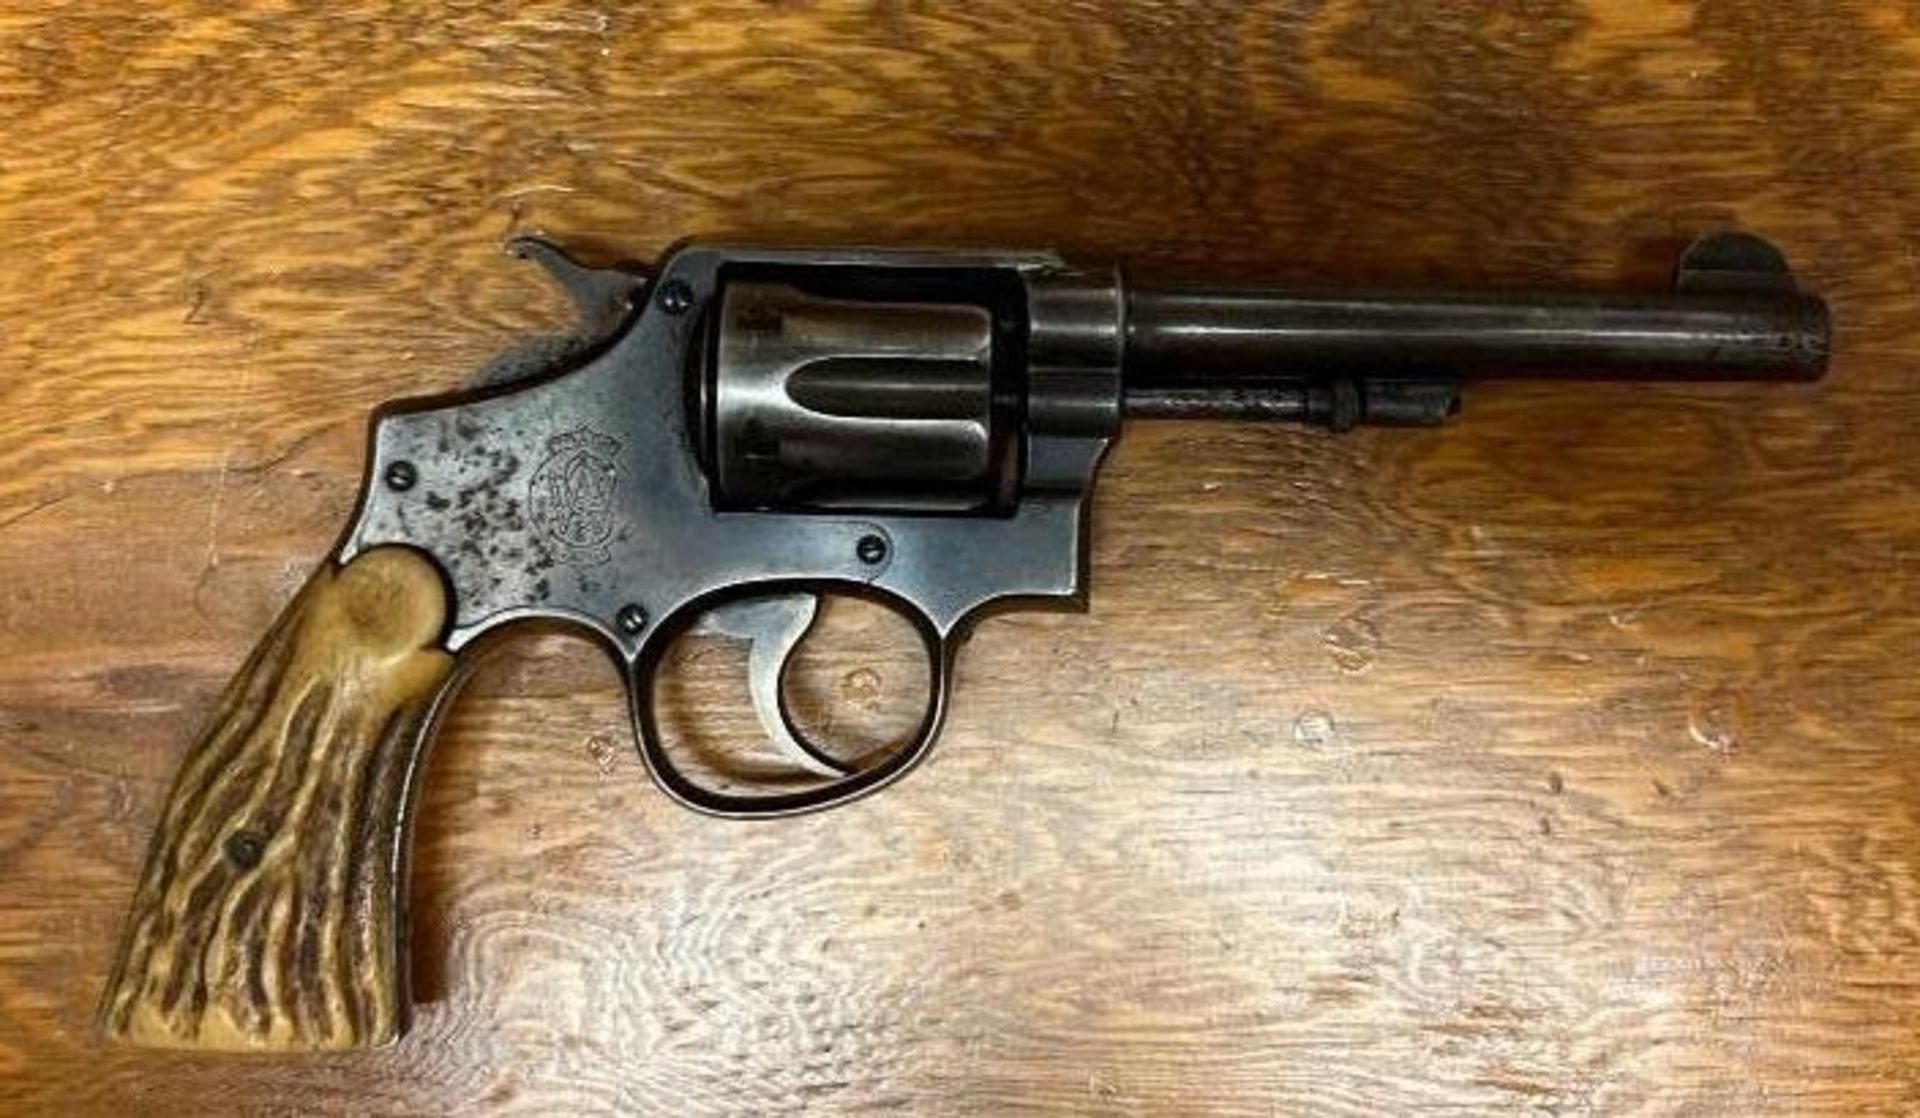 S&W Police Service Revolver - Image 3 of 9